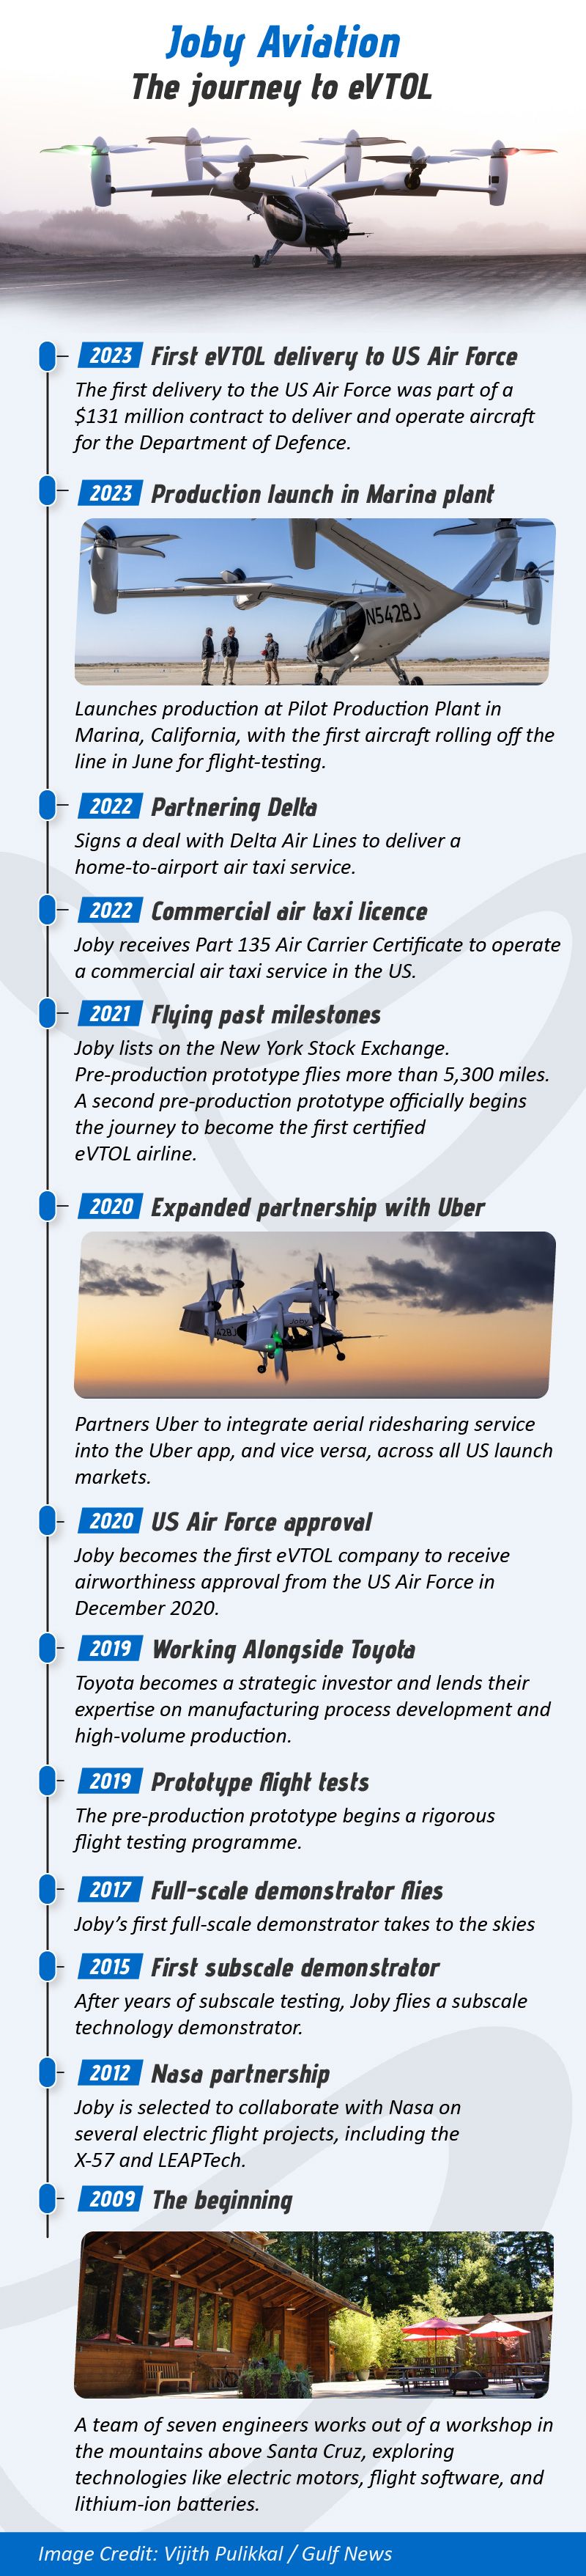 Joby-Aviation-Timeline